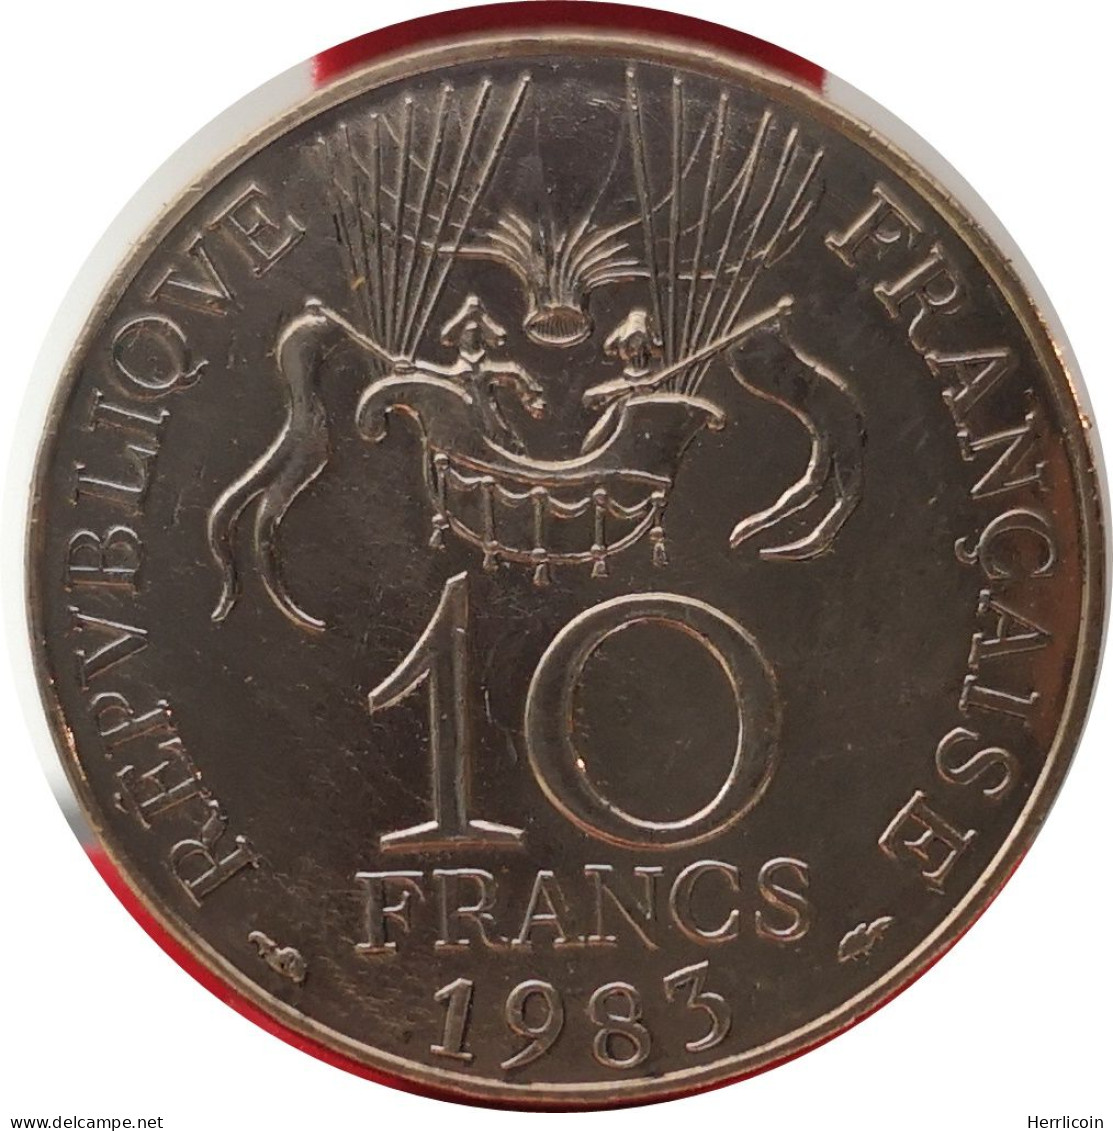 Monnaie France - 1983 Tranche A - 10 Francs Conquête De L'Espace - Herdenking